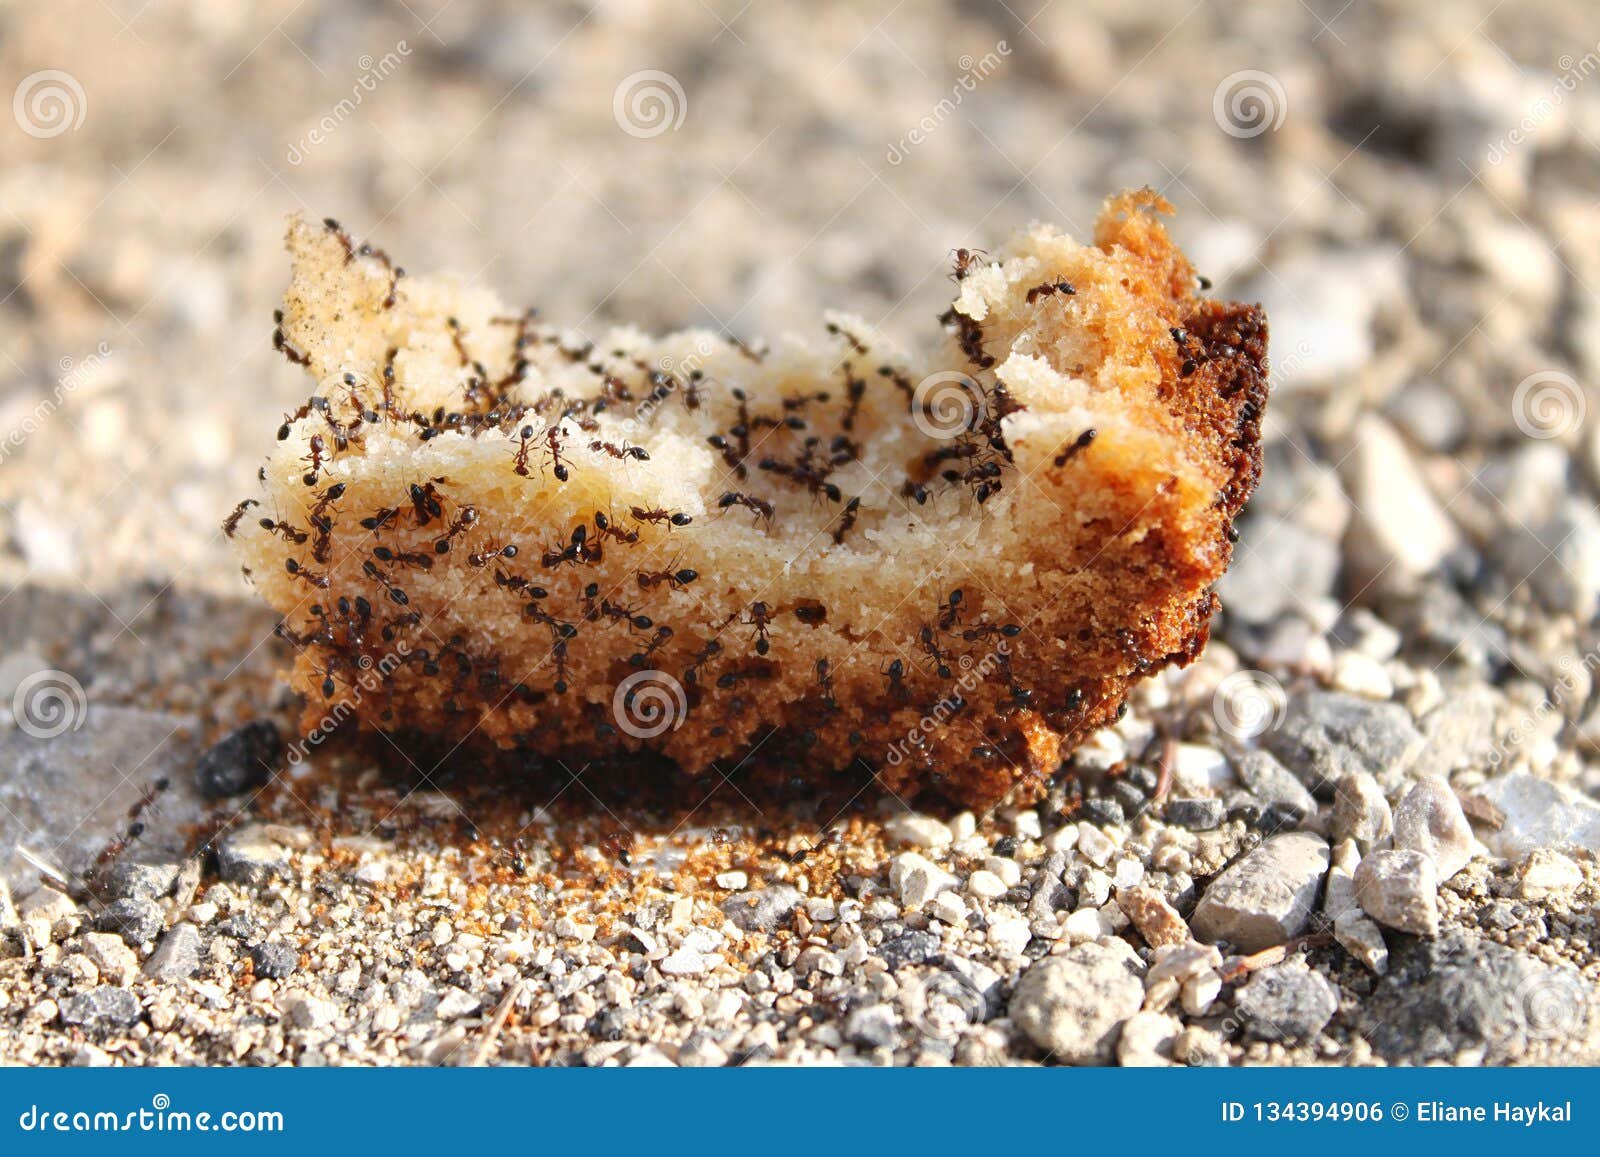 ¿Es peligroso comer pan con hormigas? Descubre la respuesta sobre seguridad alimentaria